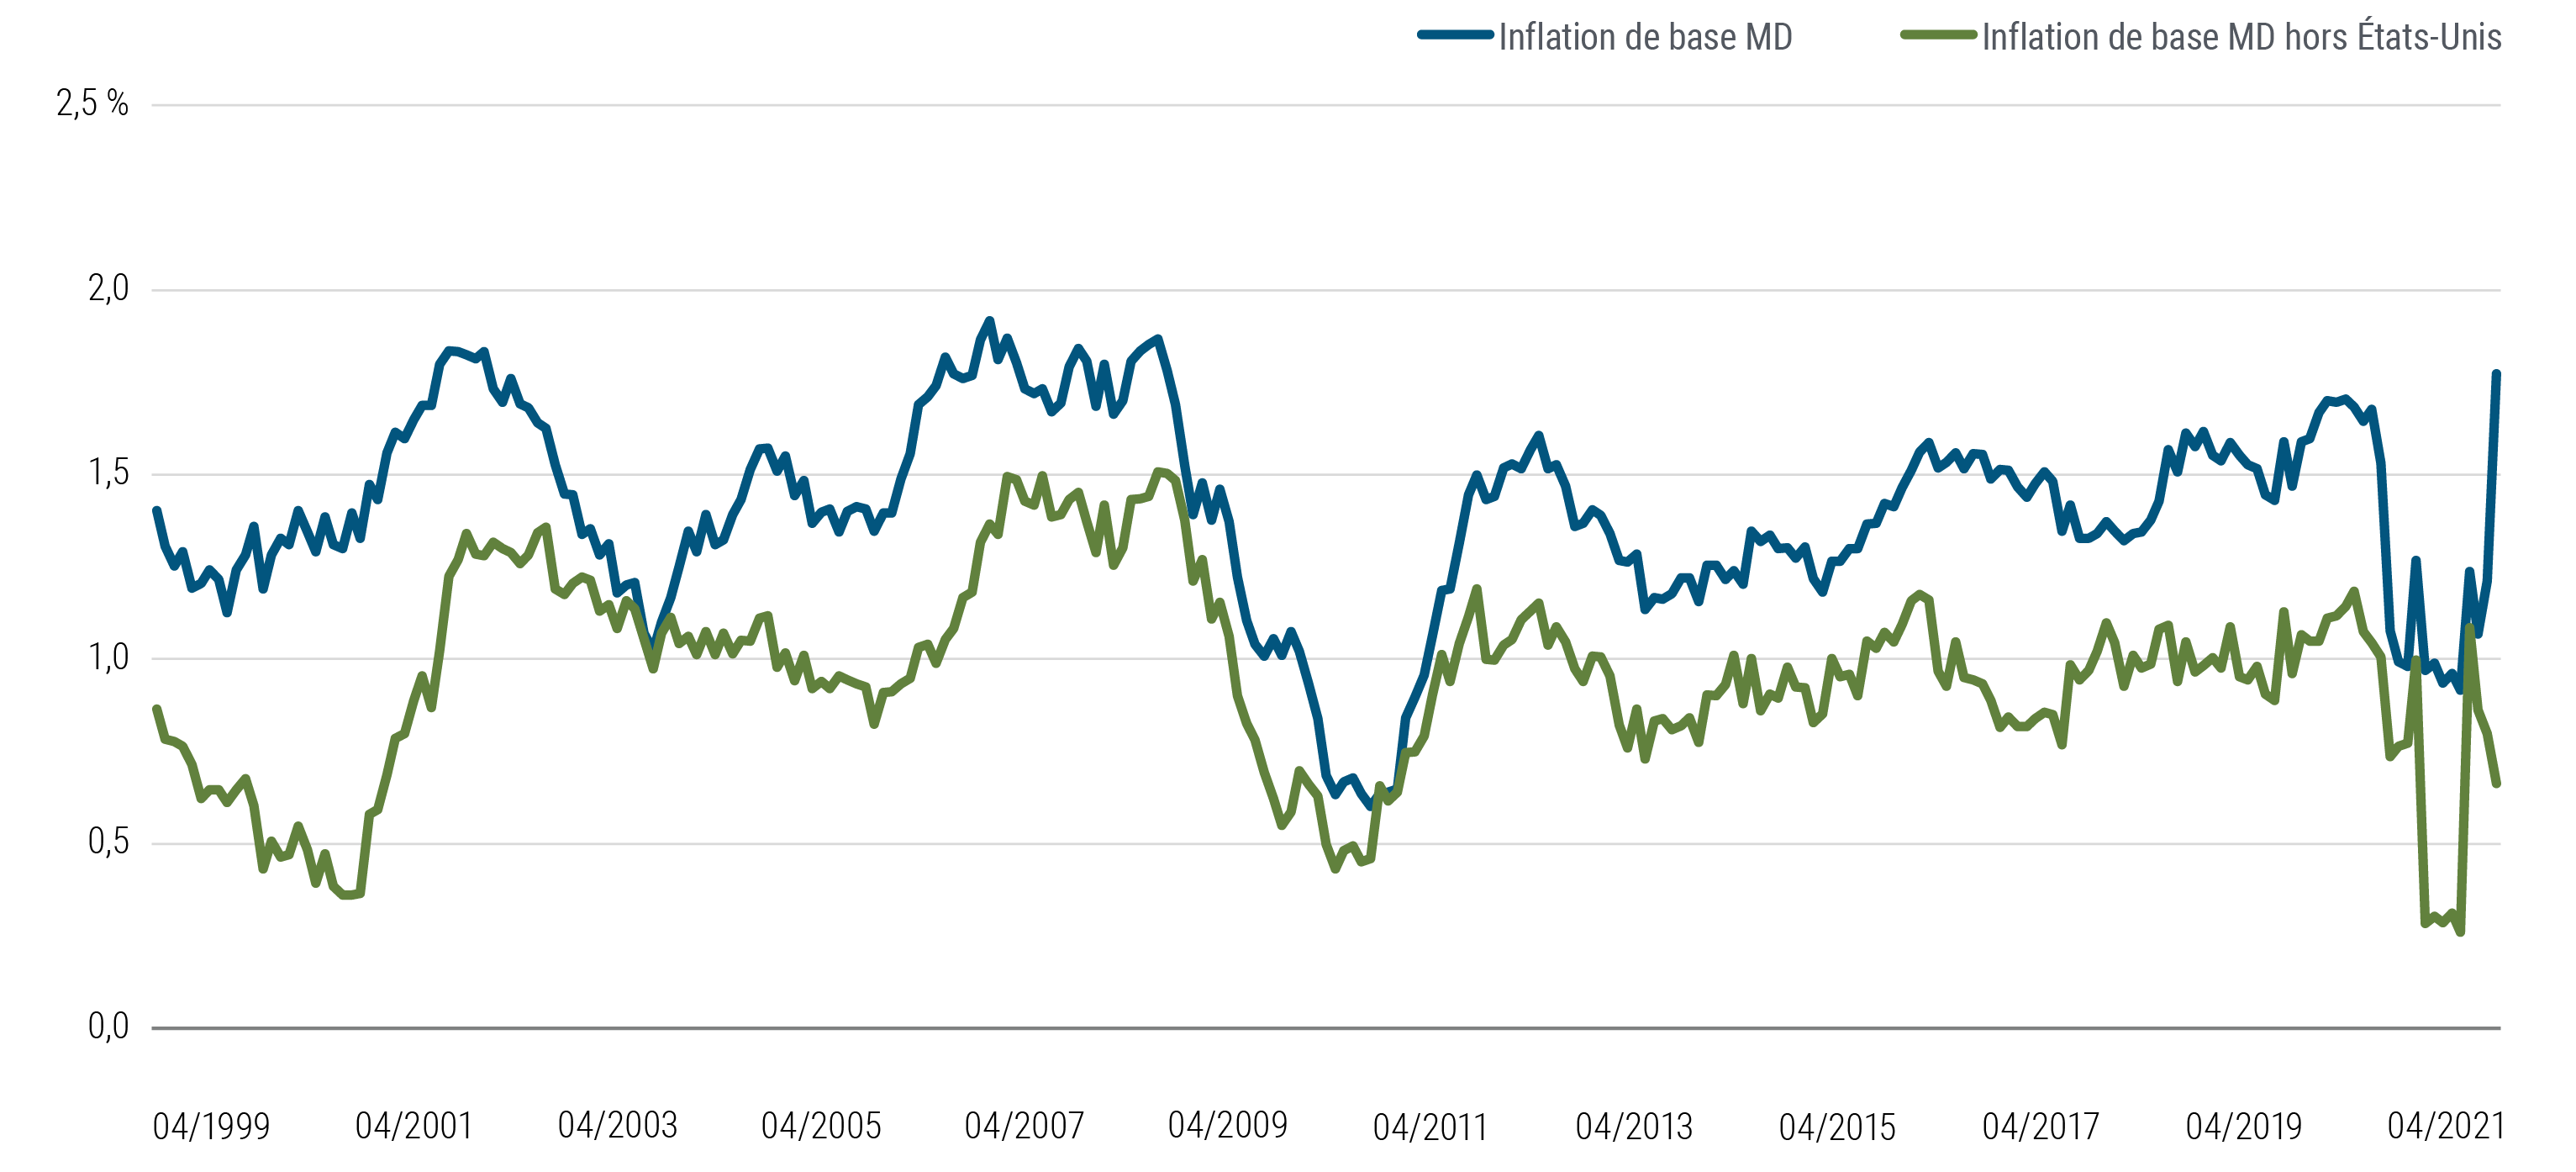 Le graphique 5 représente sur une courbe l'inflation de base pondérée par le PIB au Canada, dans la zone euro, au Japon et au Royaume-Uni, avec les États-Unis en plus sur une autre courbe, d'avril 1999 à avril 2021. Au cours de cette période, l'inflation de base aux États-Unis tendait généralement à augmenter le chiffre de la moyenne, mais pas en aussi forte proportion qu'actuellement. En avril 2021, la moyenne pondérée d’inflation dans tous les pays concernés s'établissait effectivement à 1,8 %, mais seulement à 0,7 % si on enlève les États-Unis.